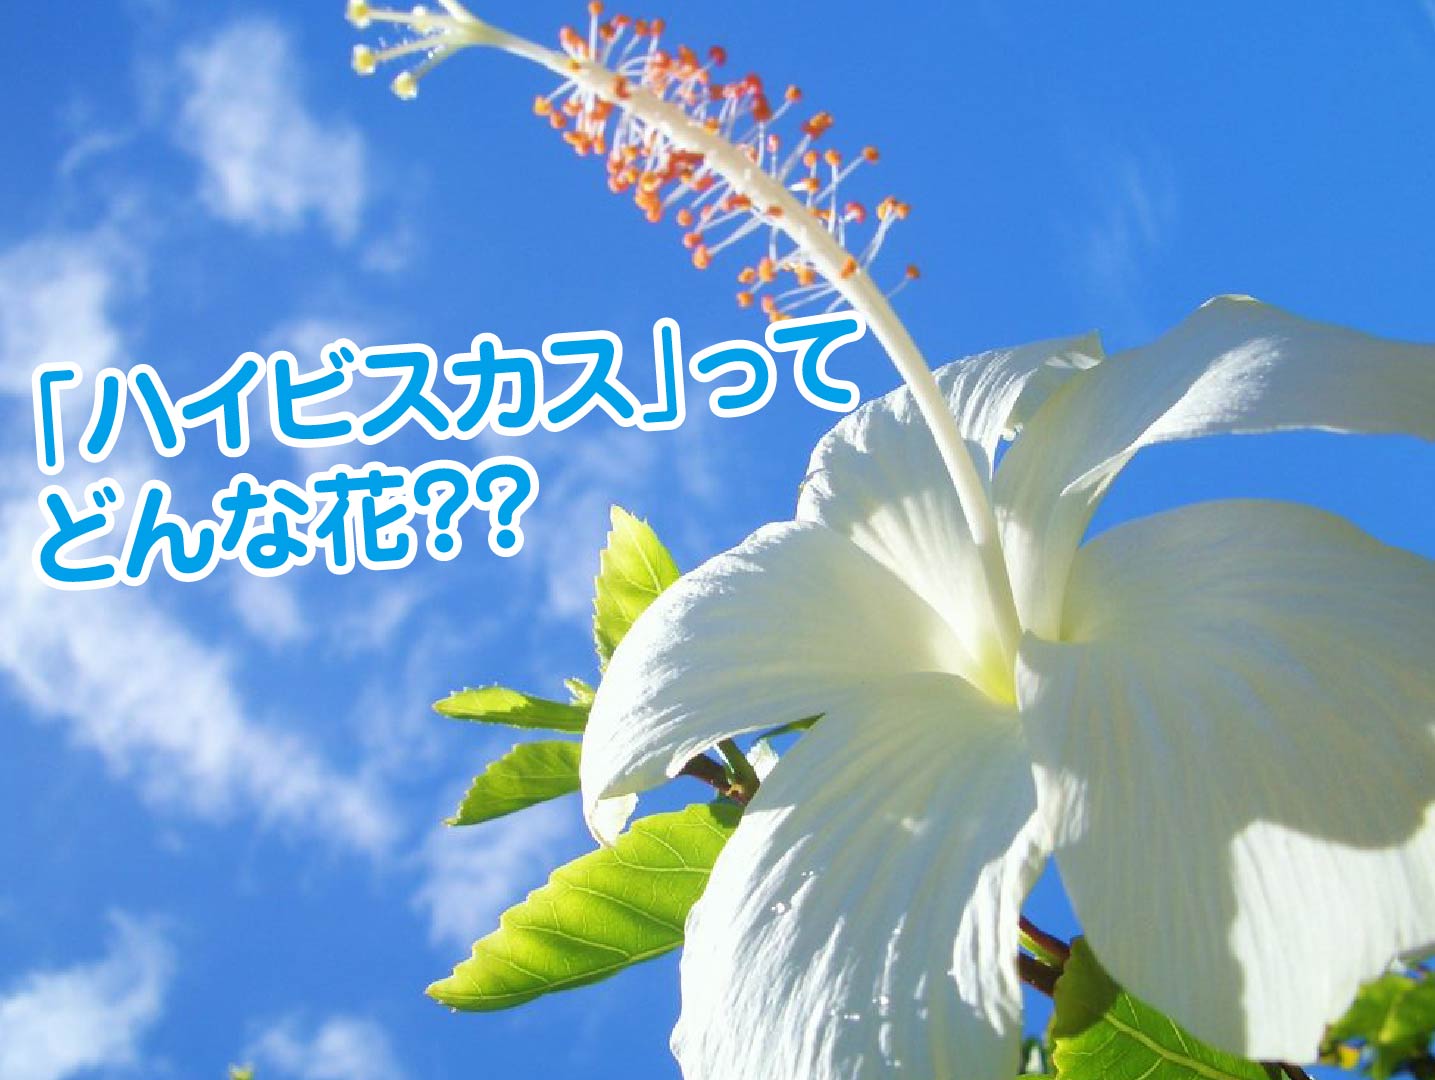 沖縄の花 ハイビスカス の雑学を知ろう ラピスマリンスポーツ